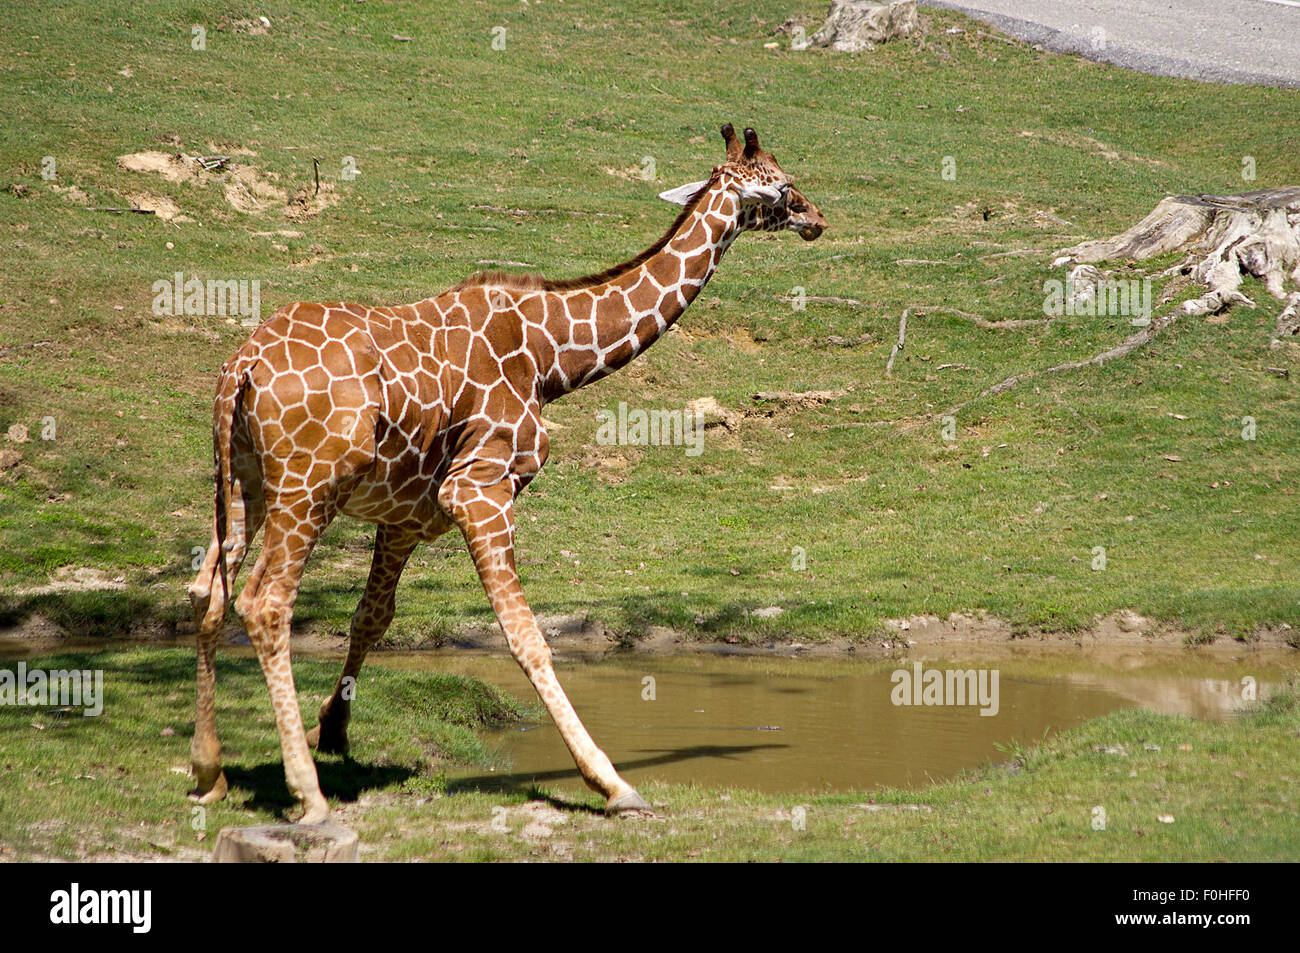 La girafe, le long cou des girafes au zoo, la girafe mange de l'herbe sur une branche Banque D'Images